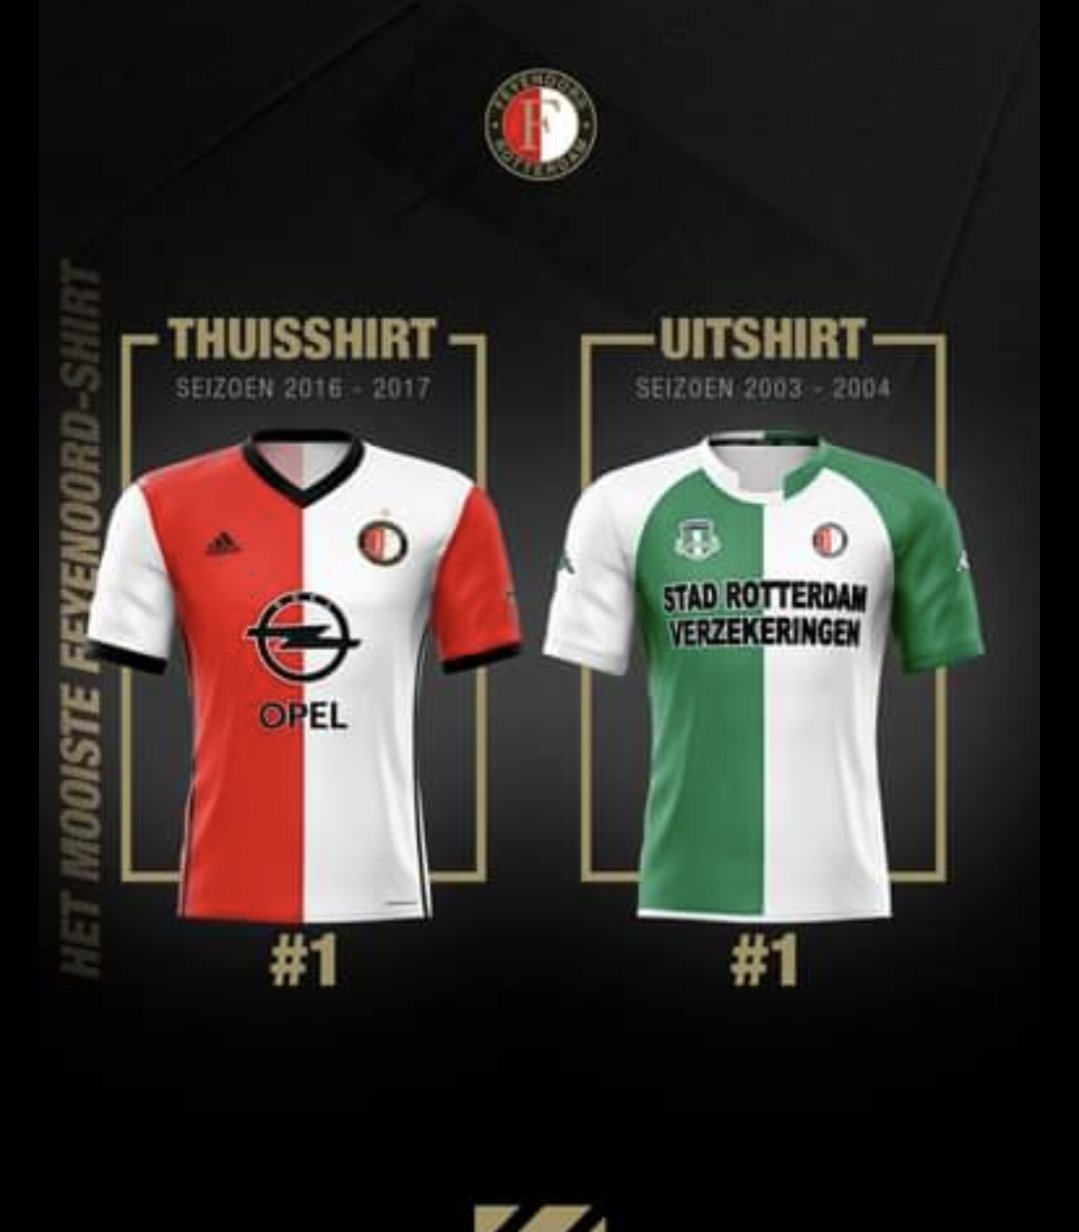 Rijnmond Sport on Twitter: "🆕👕 | Veel reacties op het nieuwe uitshirt van #Feyenoord, al is een puntje van kritiek... Wat vind jij van het shirt? Lees meer: https://t.co/y3UfqmJcnA